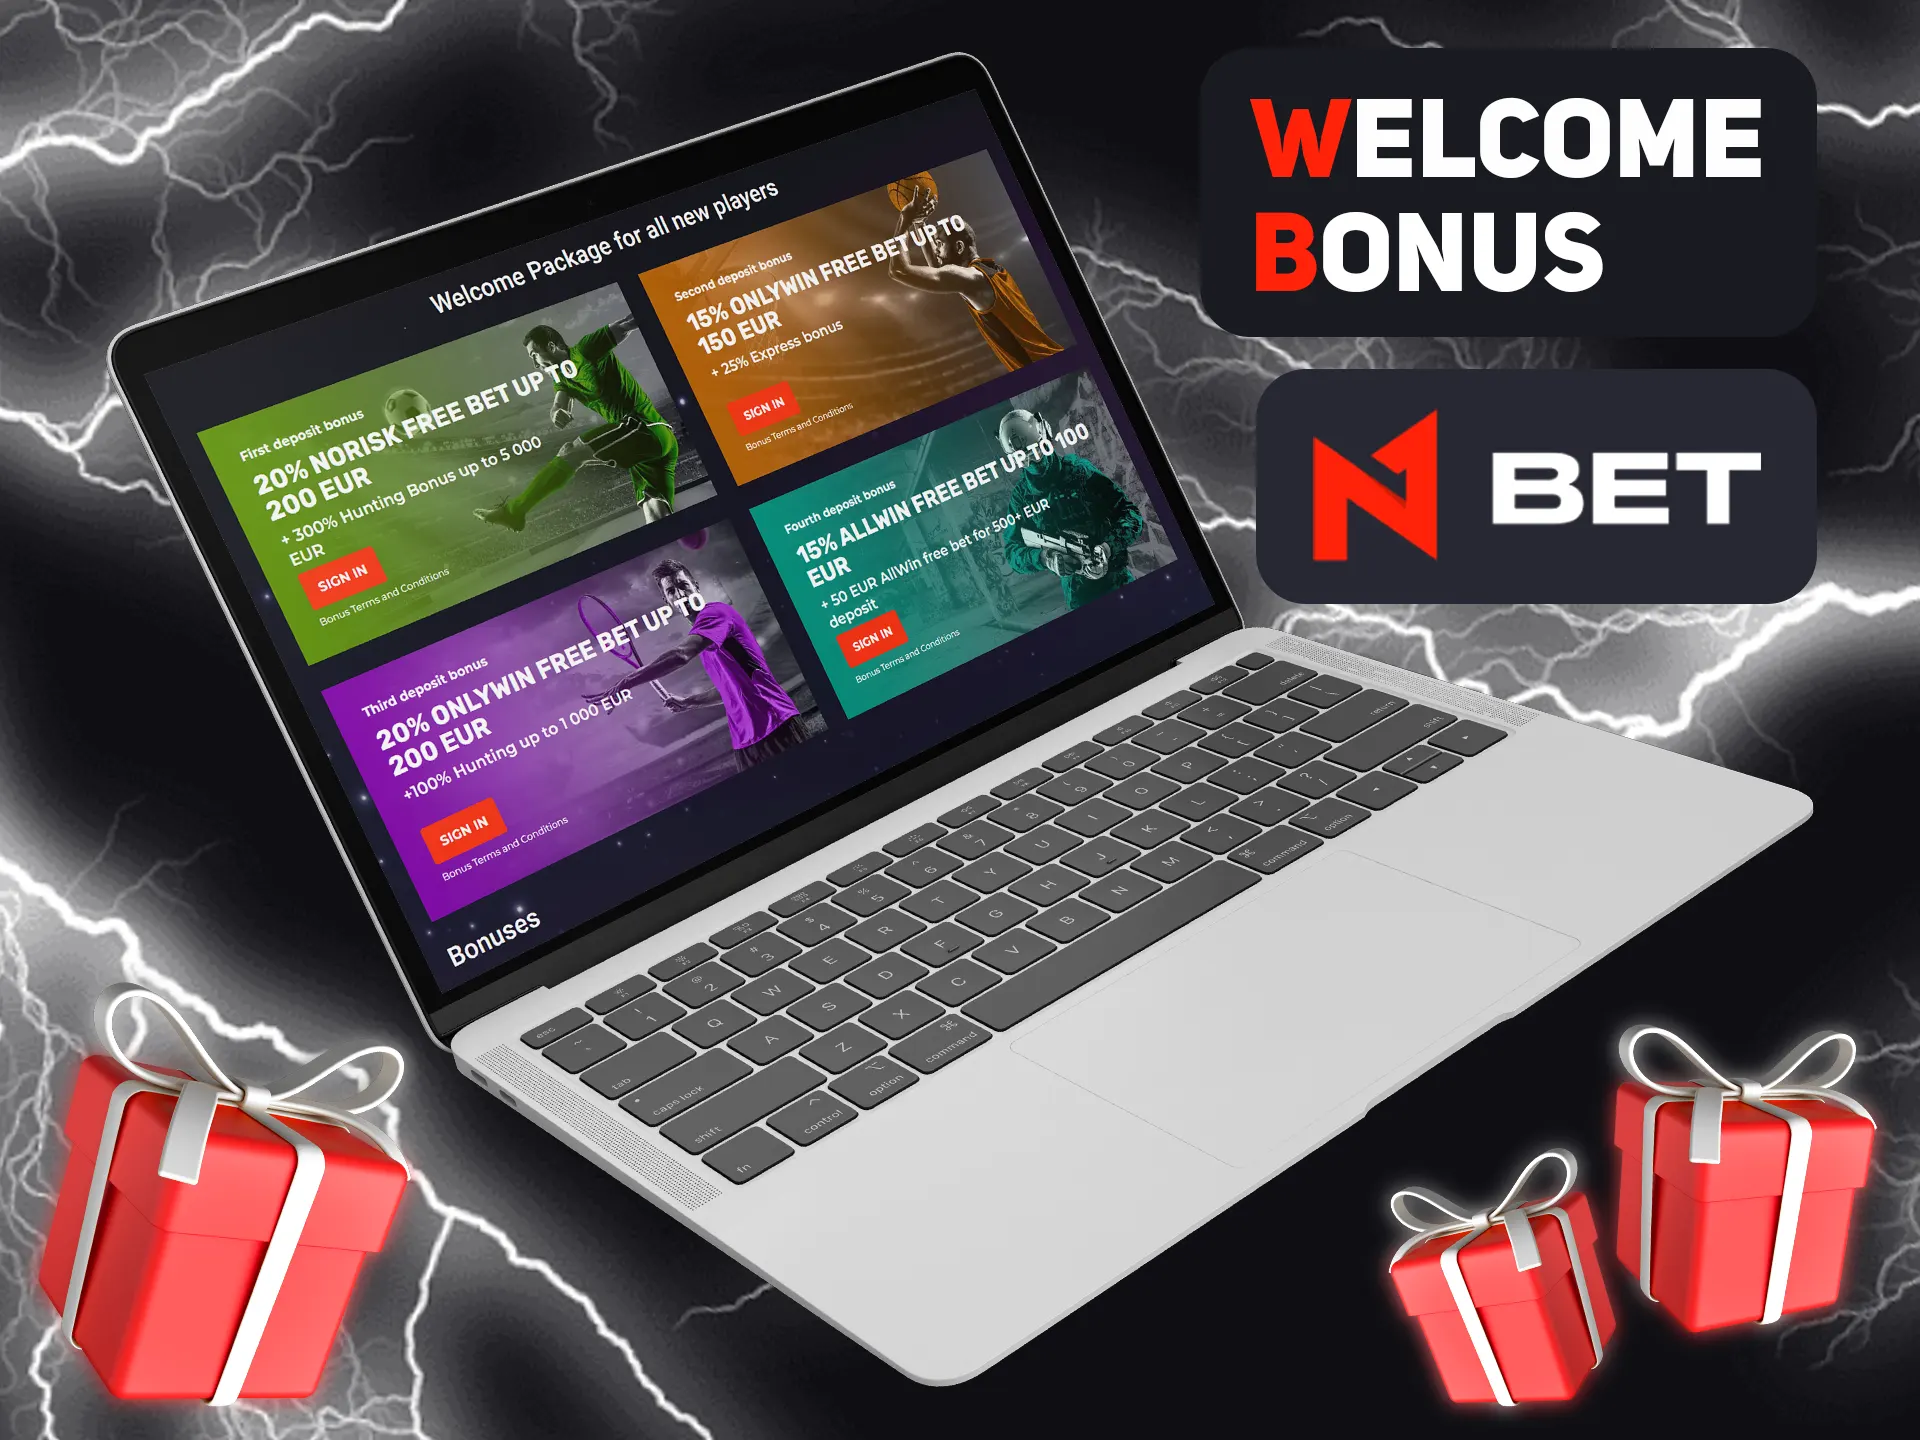 Get your bonus after succesfull registration at N1bet.